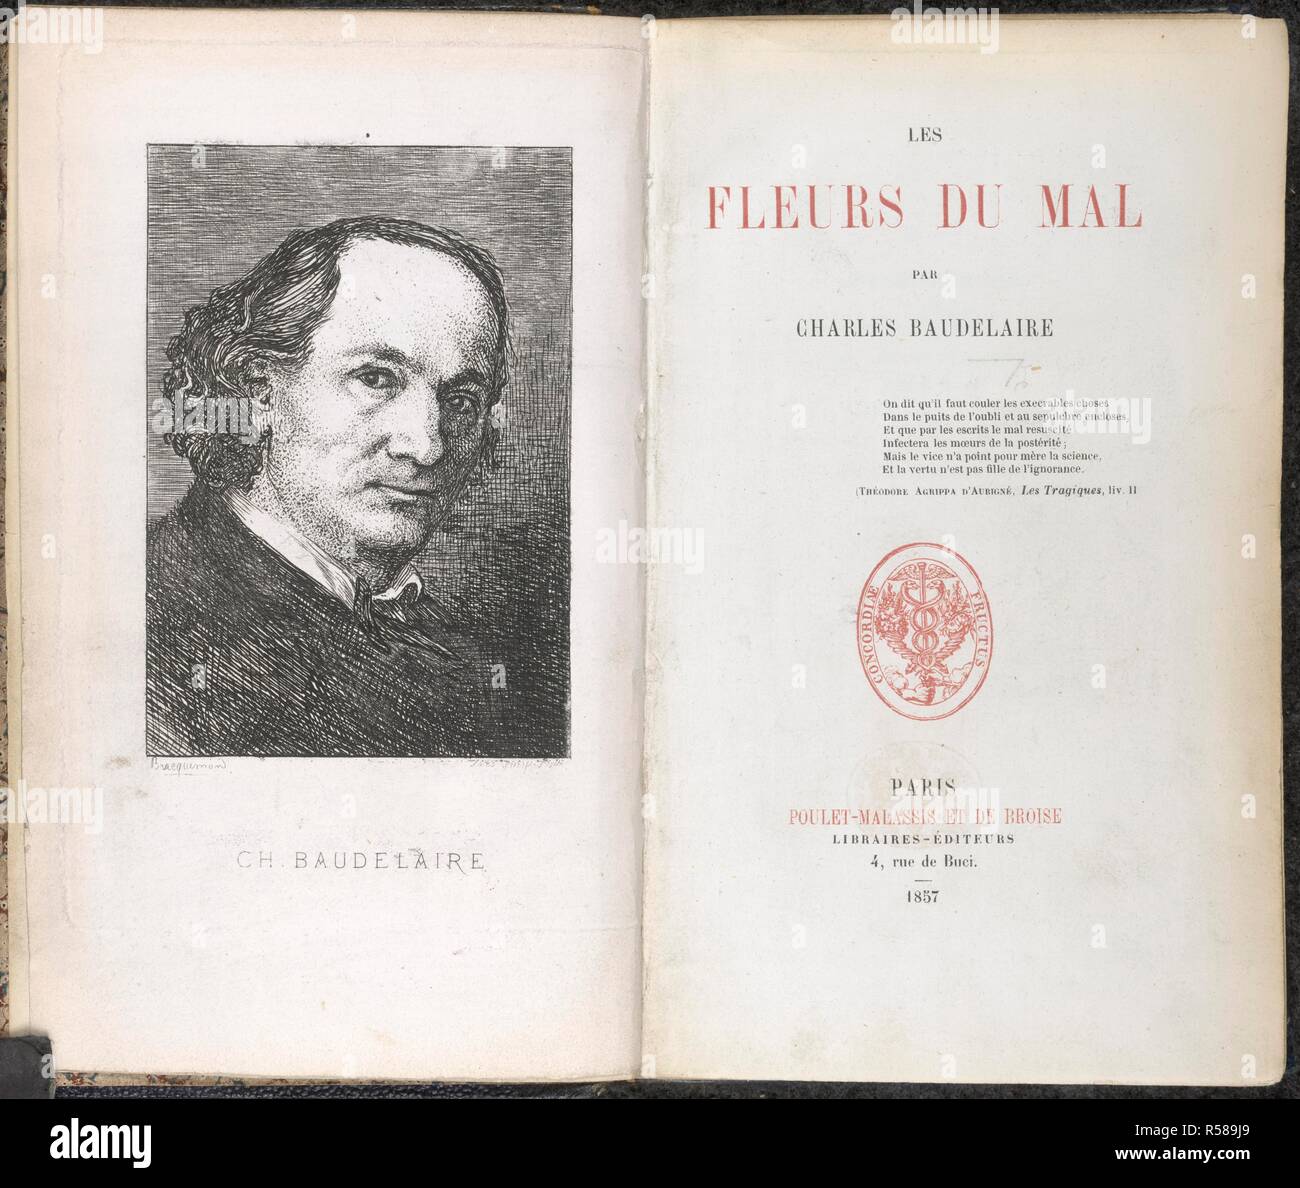 Charles Pierre Baudelaire. Les Fleurs du mal. [Poems. With a portrait.].  Paris, 1857. Charles Pierre Baudelaire (1821-1867). French symbolist poet.  Portrait.Title page of his major work. Image taken from Les Fleurs du